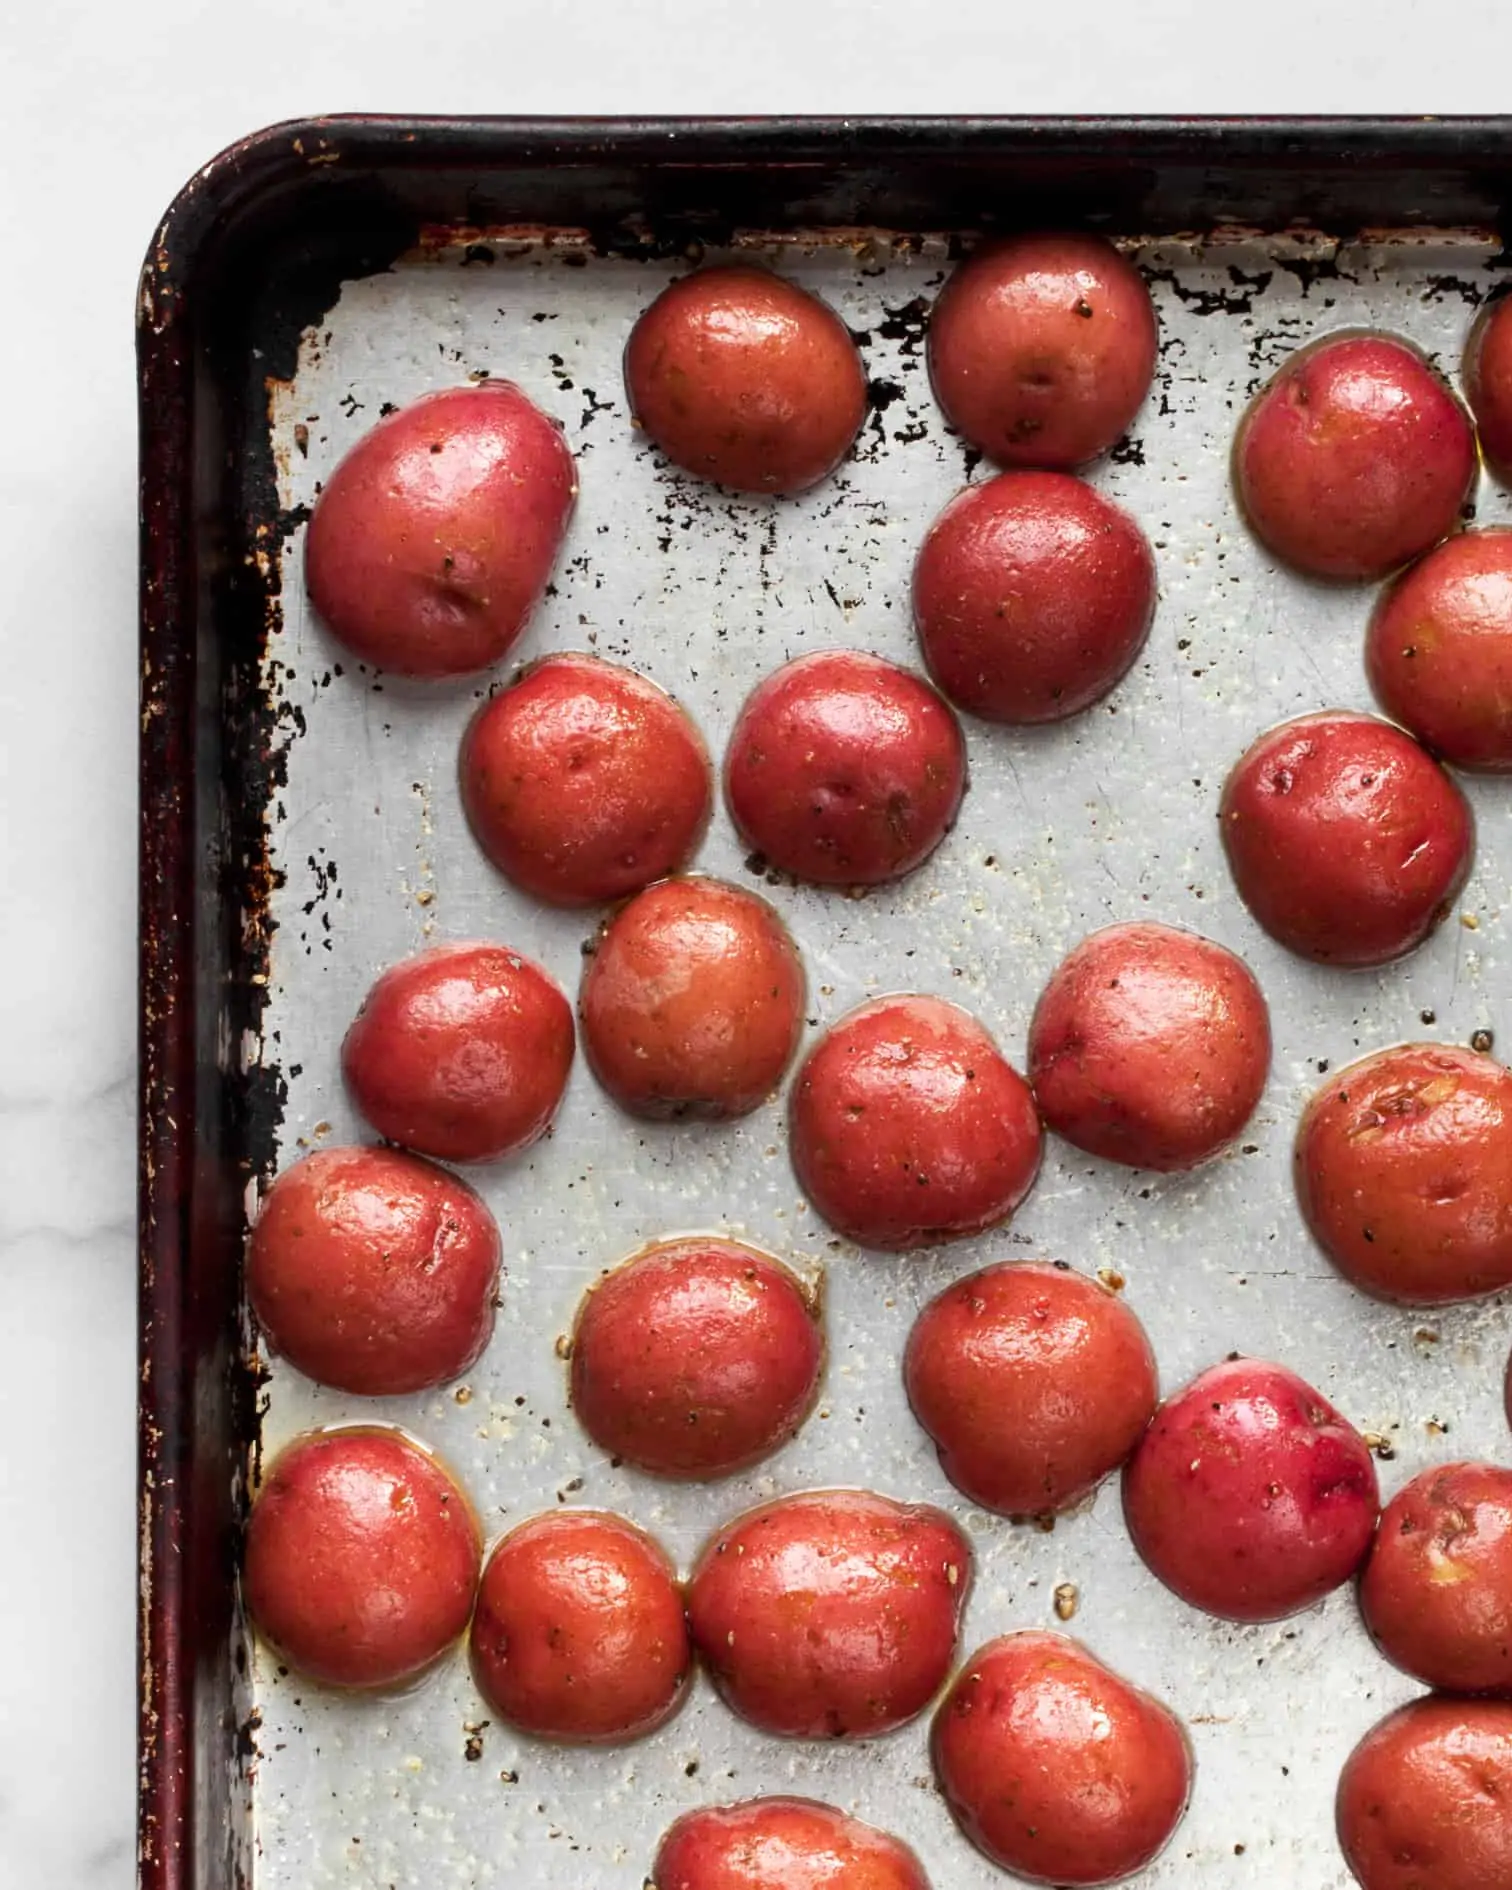 Red potatoes on sheet pan